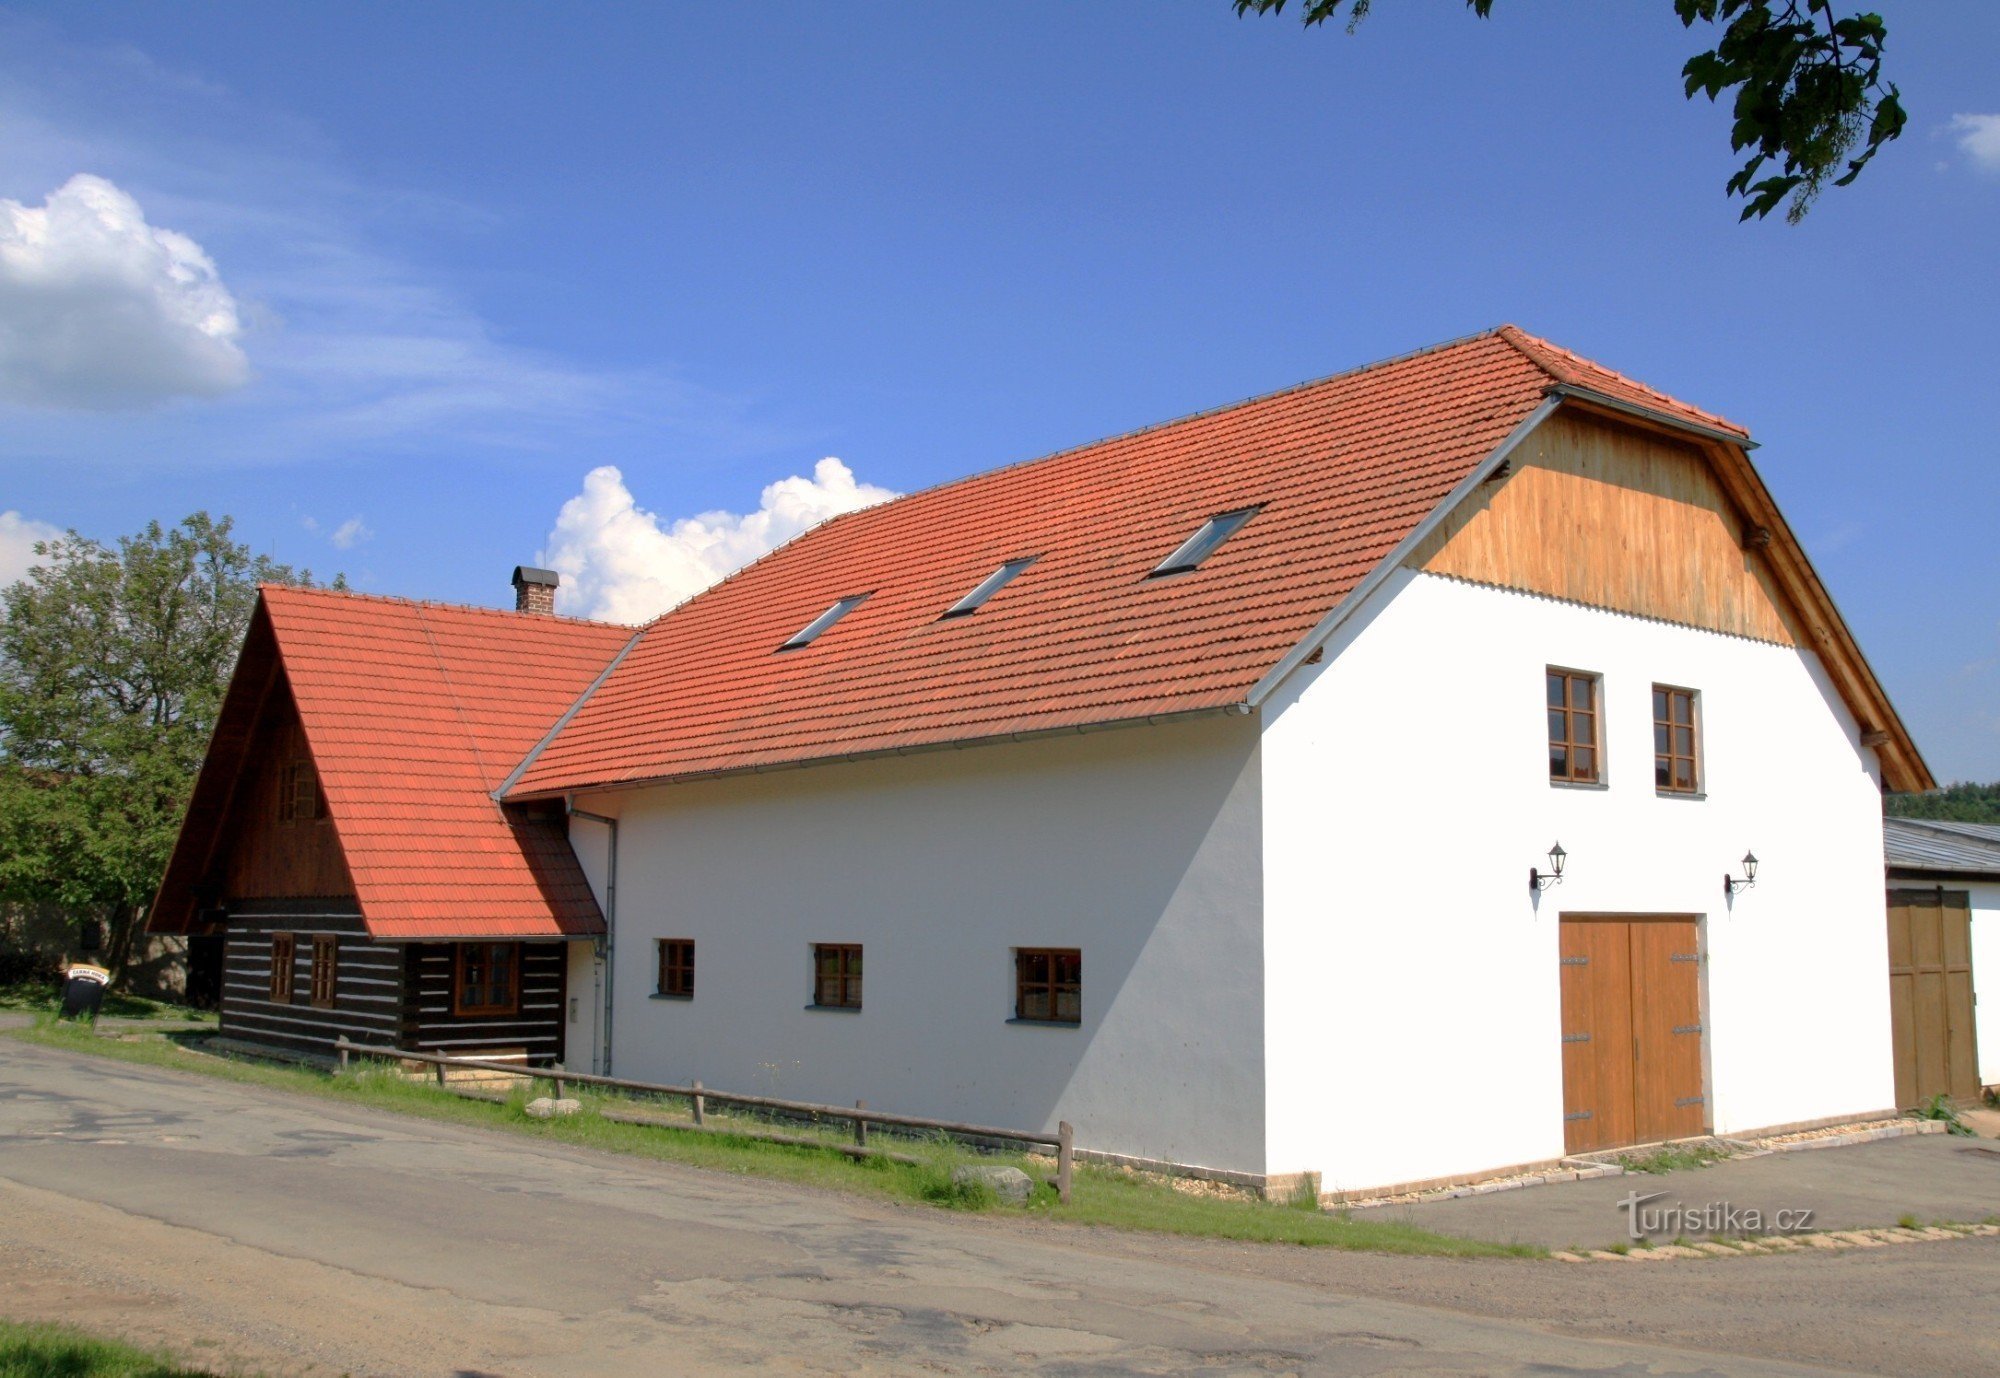 Horní Smržov - muzeu de arhitectură populară